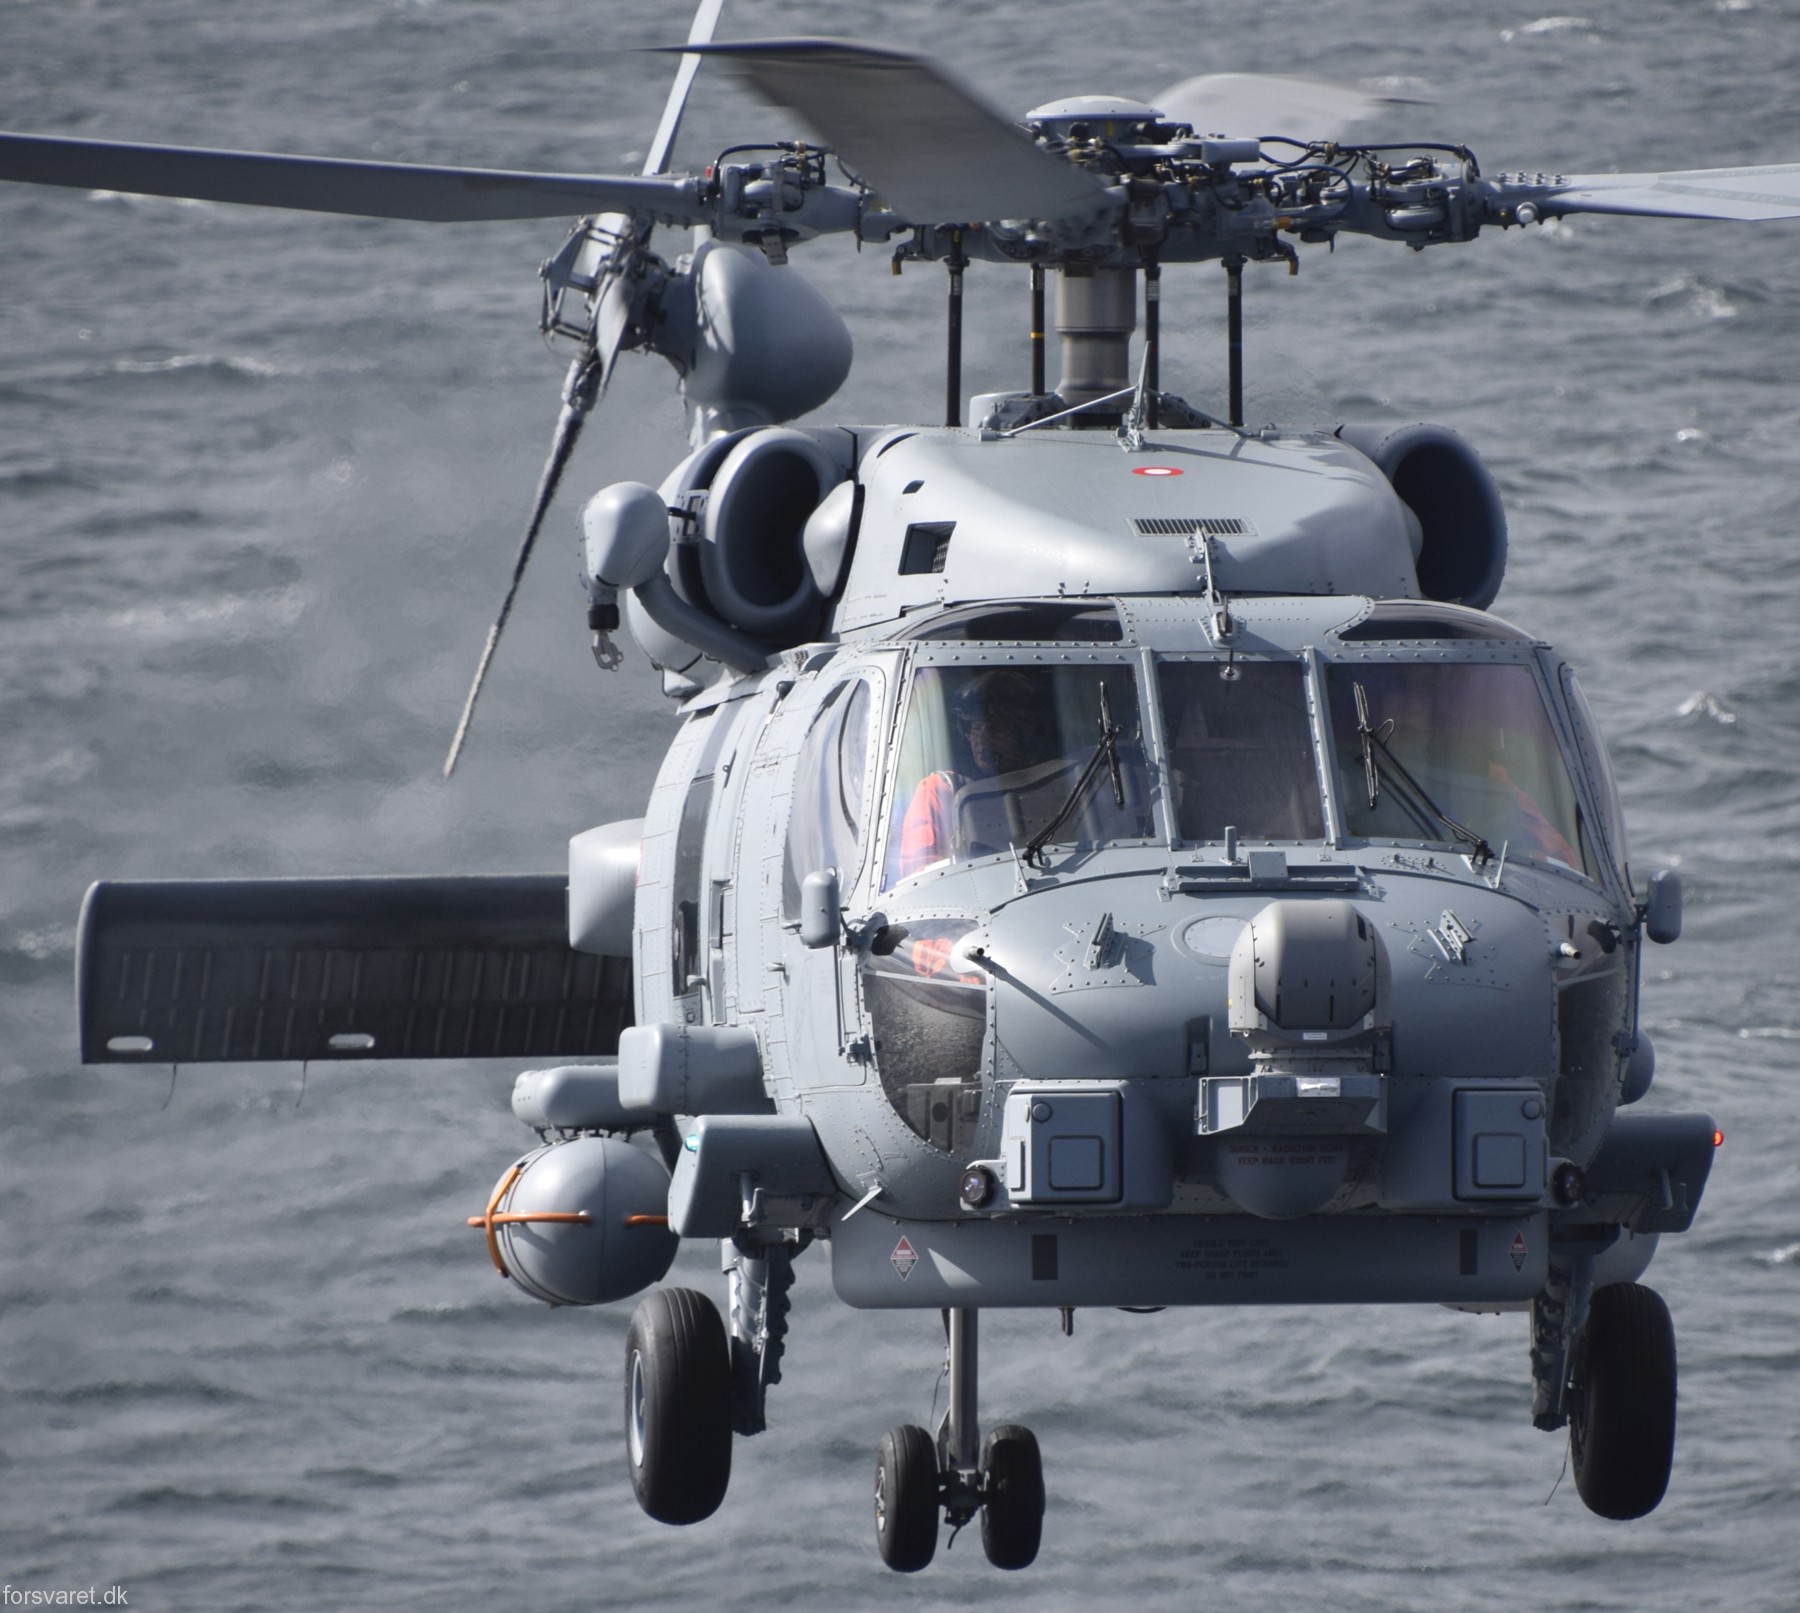 mh-60r seahawk royal danish navy air force flyvevåbnet kongelige danske marine sikorsky helicopter 723 eskadrille squadron karup 25